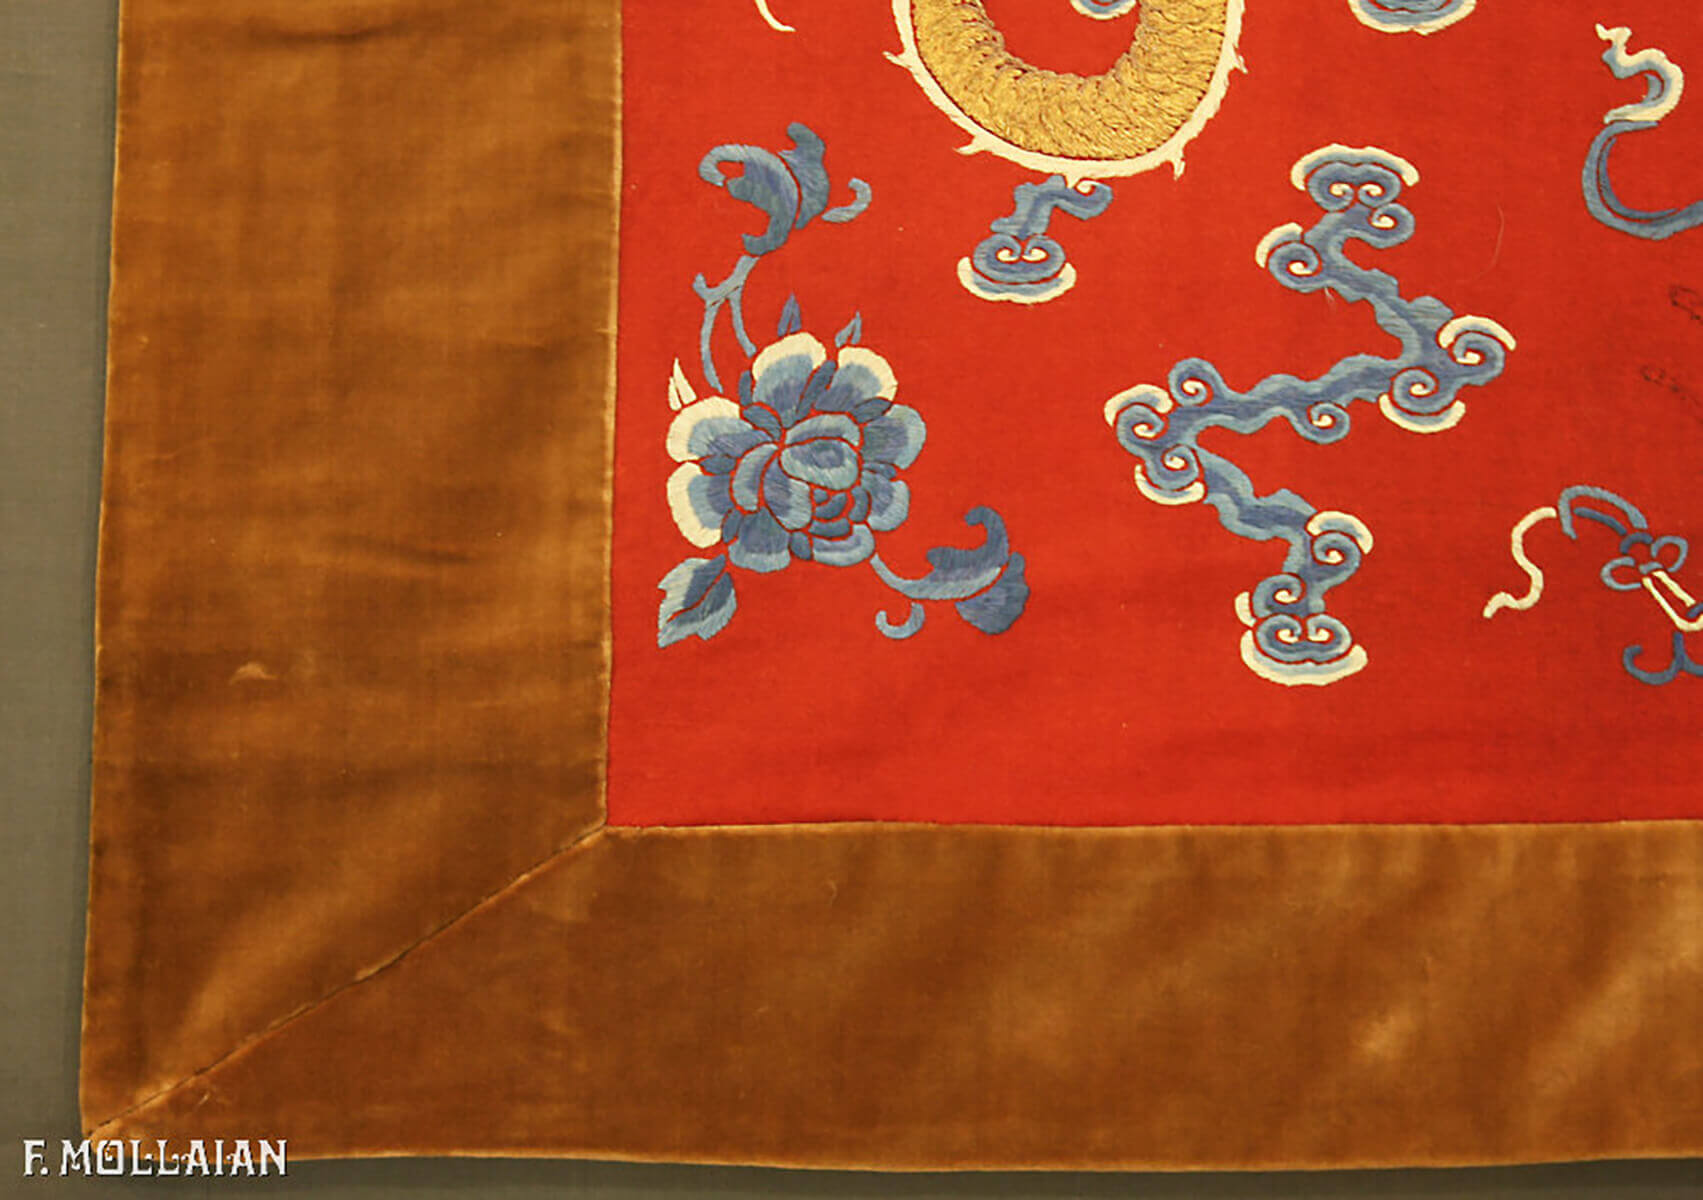 Textil China Antiguo (Seda & Metal) n°:87635740